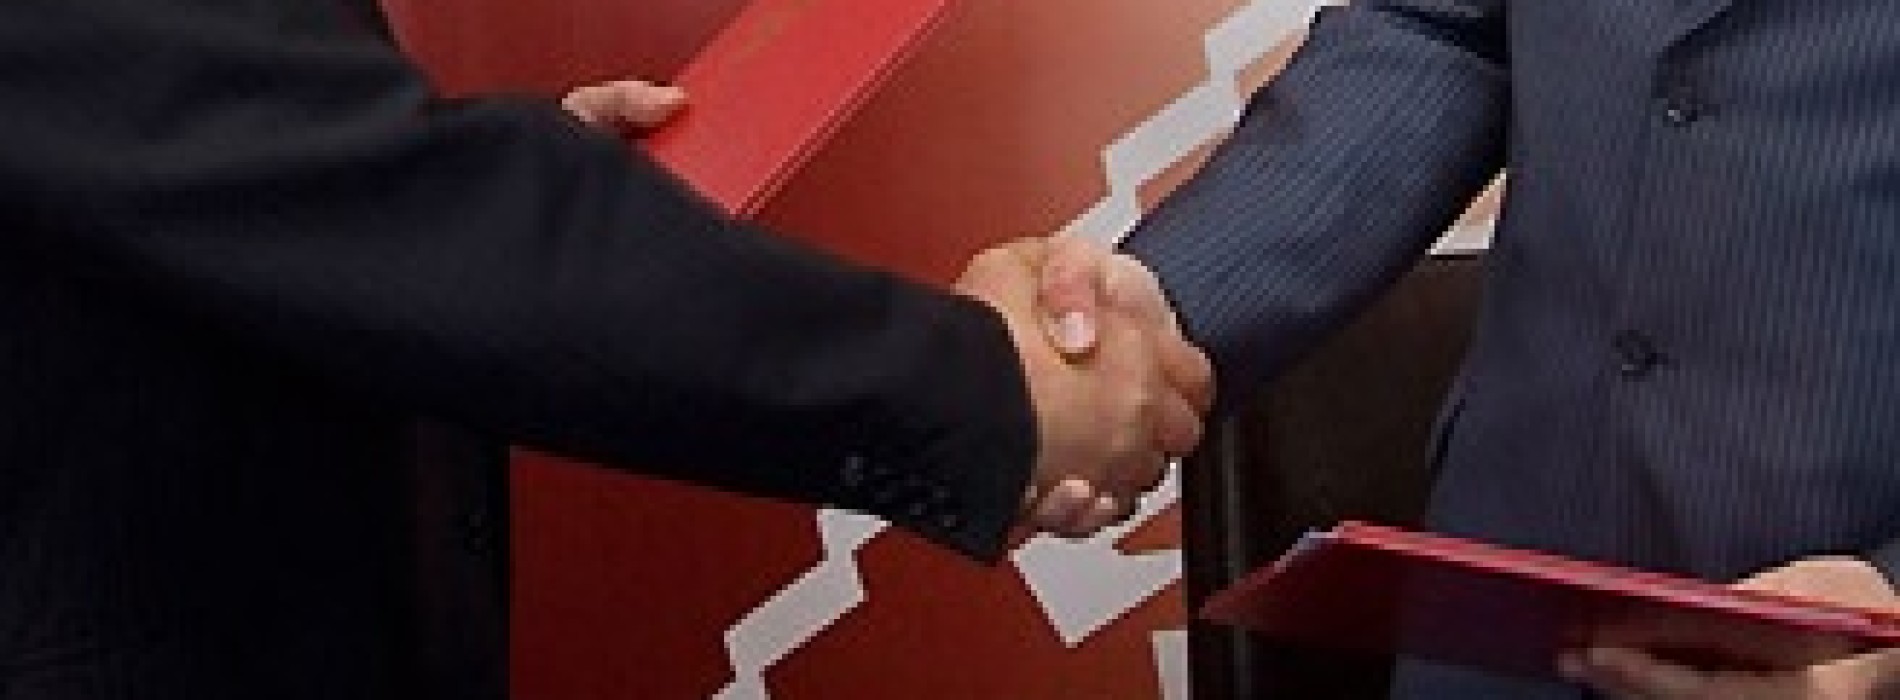 Jakie są ograniczenia w zawarciu umów pomiędzy spółką a jej udziałowcami?